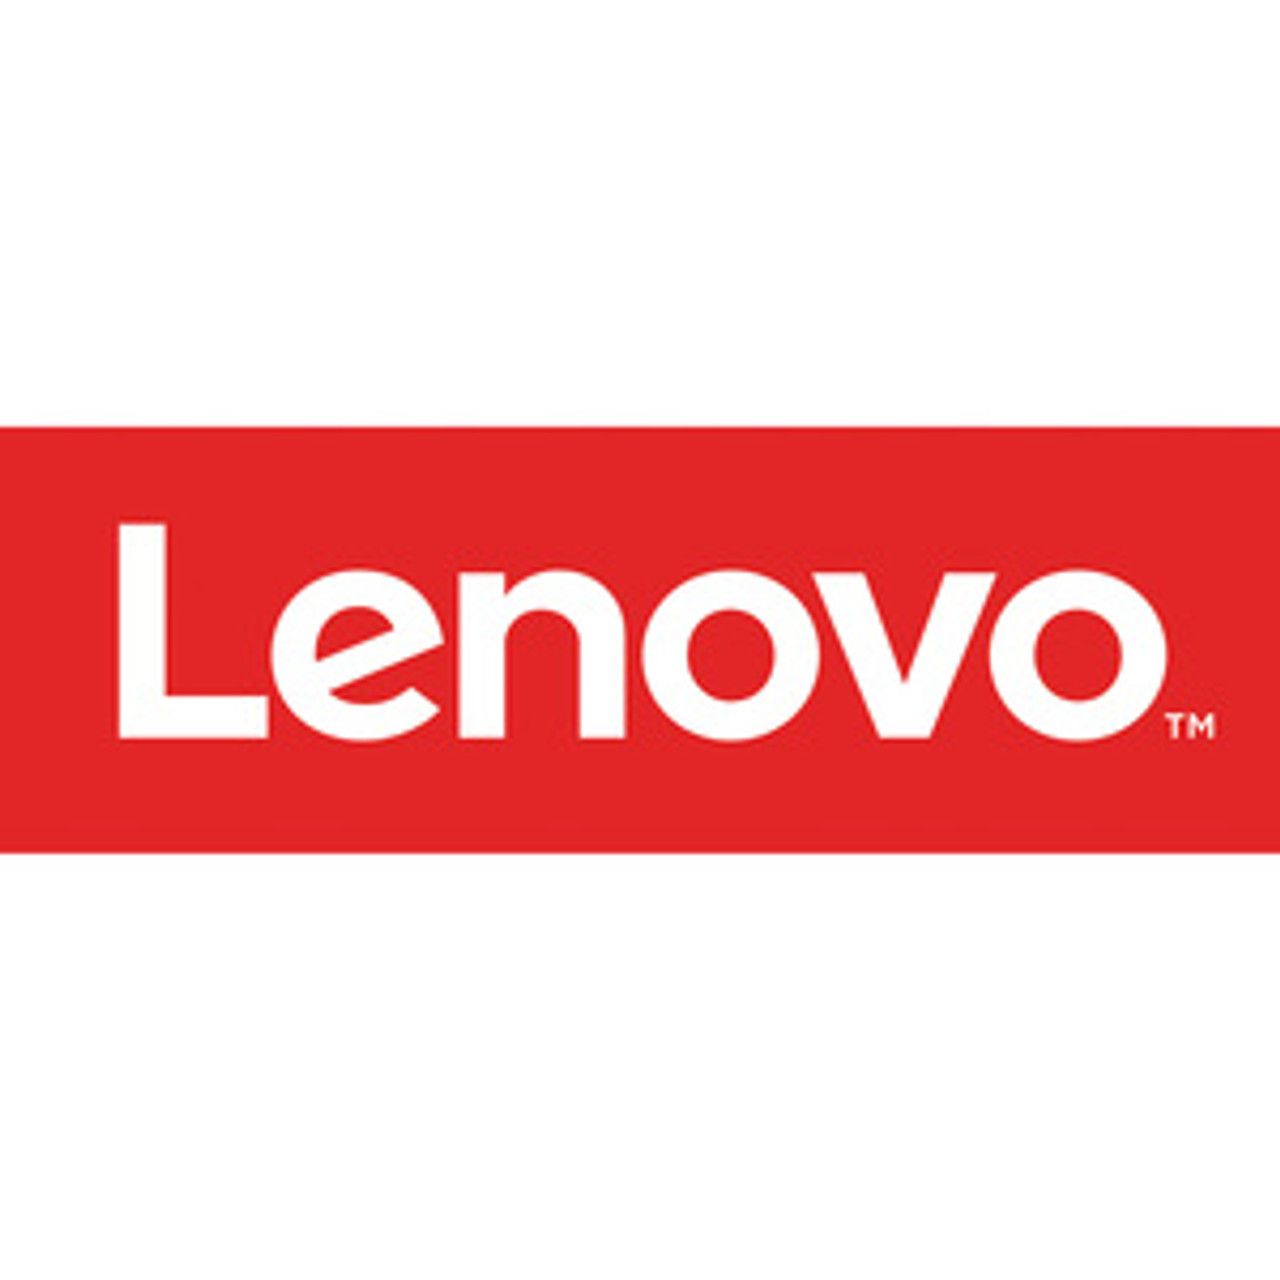 Lenovo 78000856